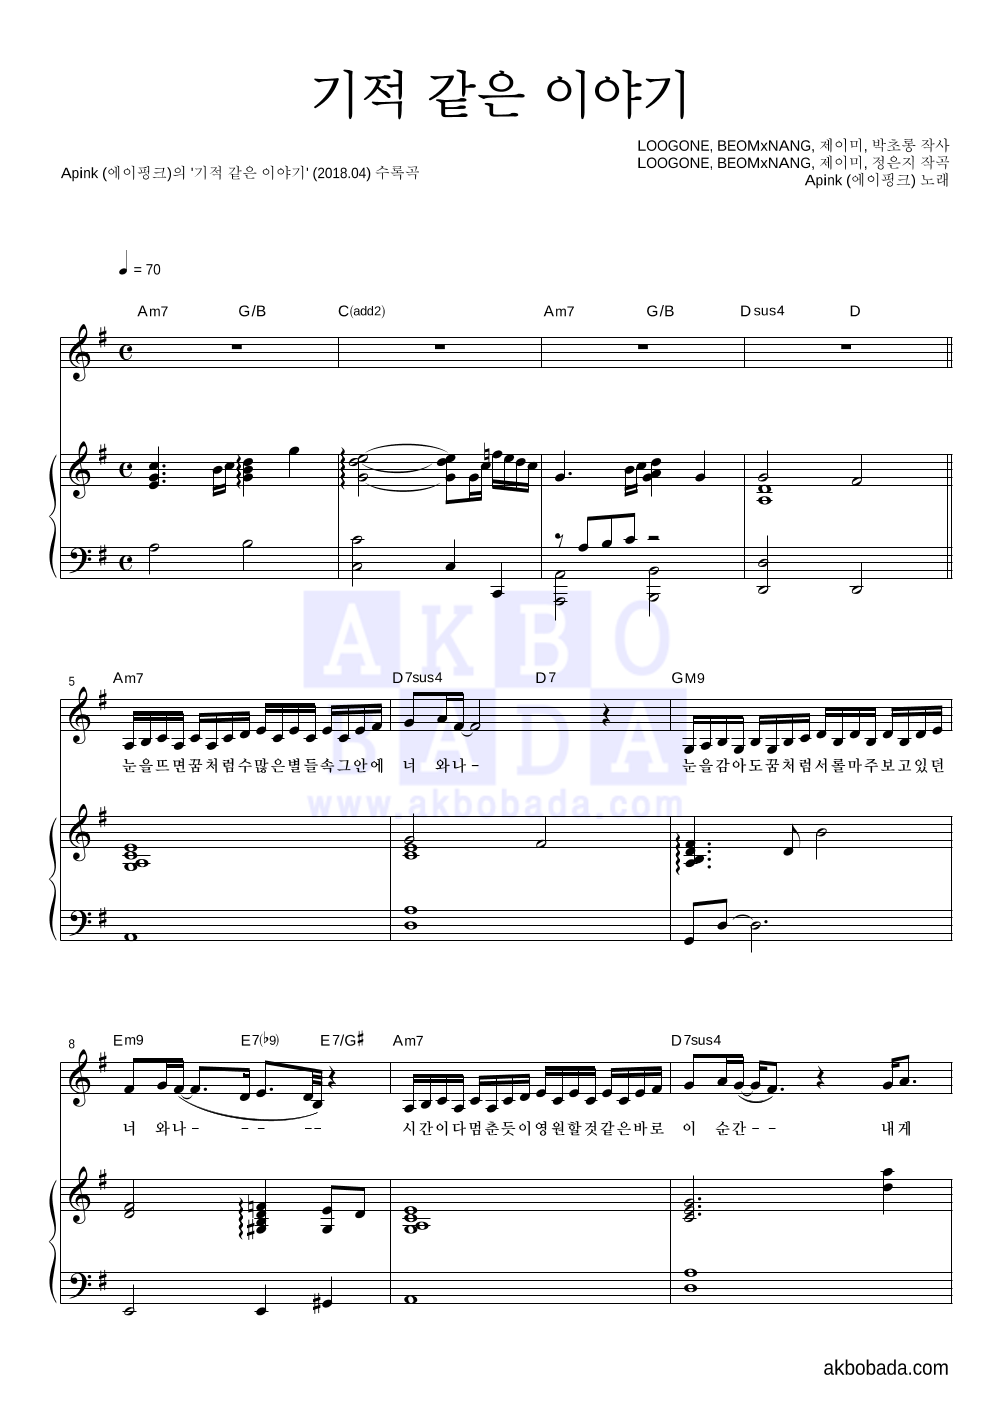 에이핑크 - 기적 같은 이야기 피아노 3단 악보 